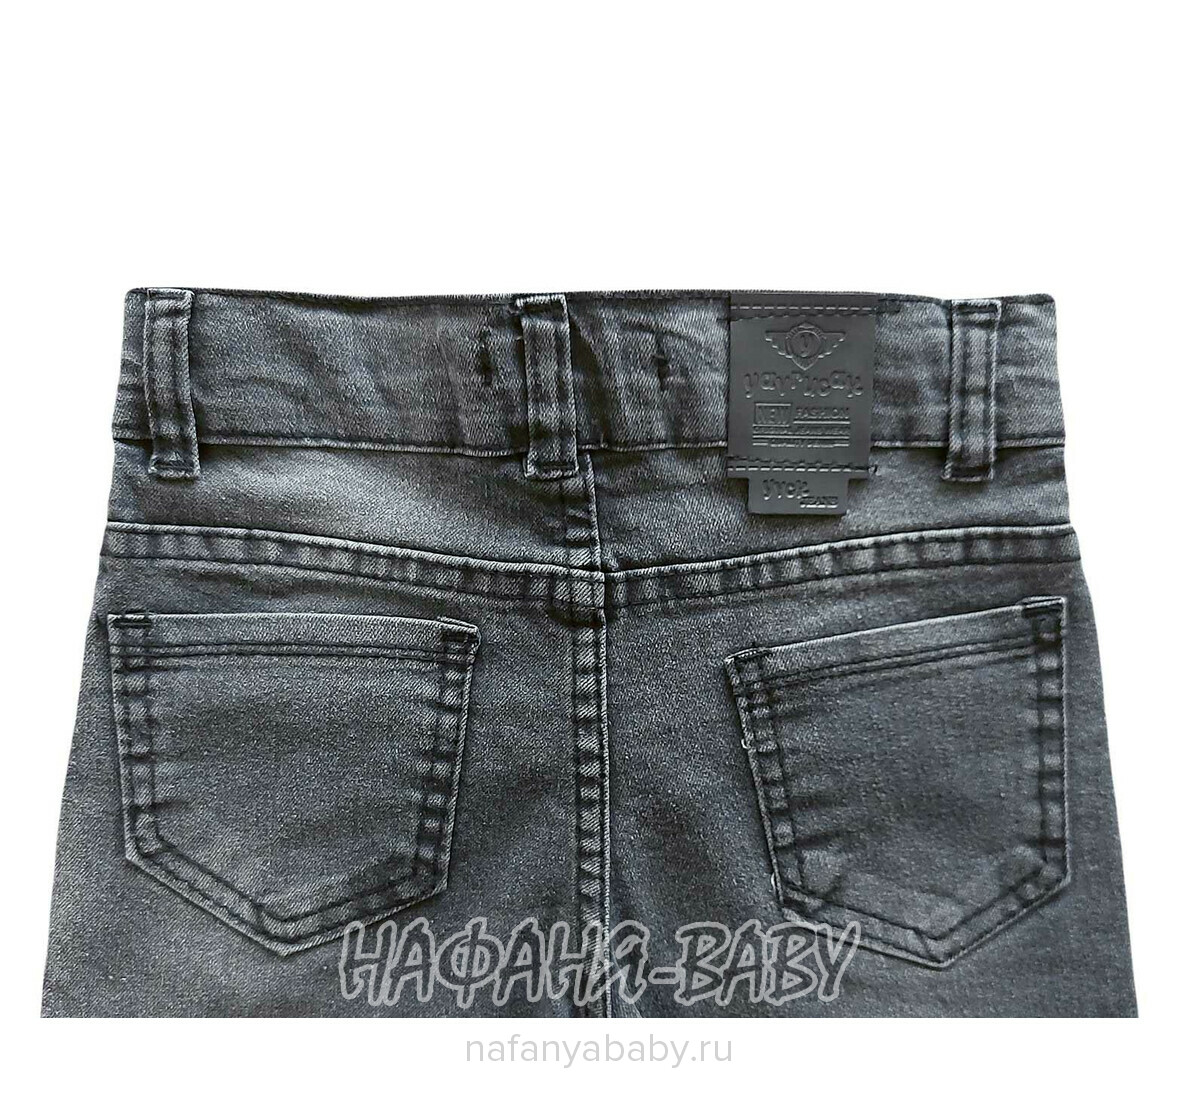 Детские джинсы YAVRUCAK арт: 4200 для мальчика от 3 до 7 лет, цвет темно-серый, оптом Турция